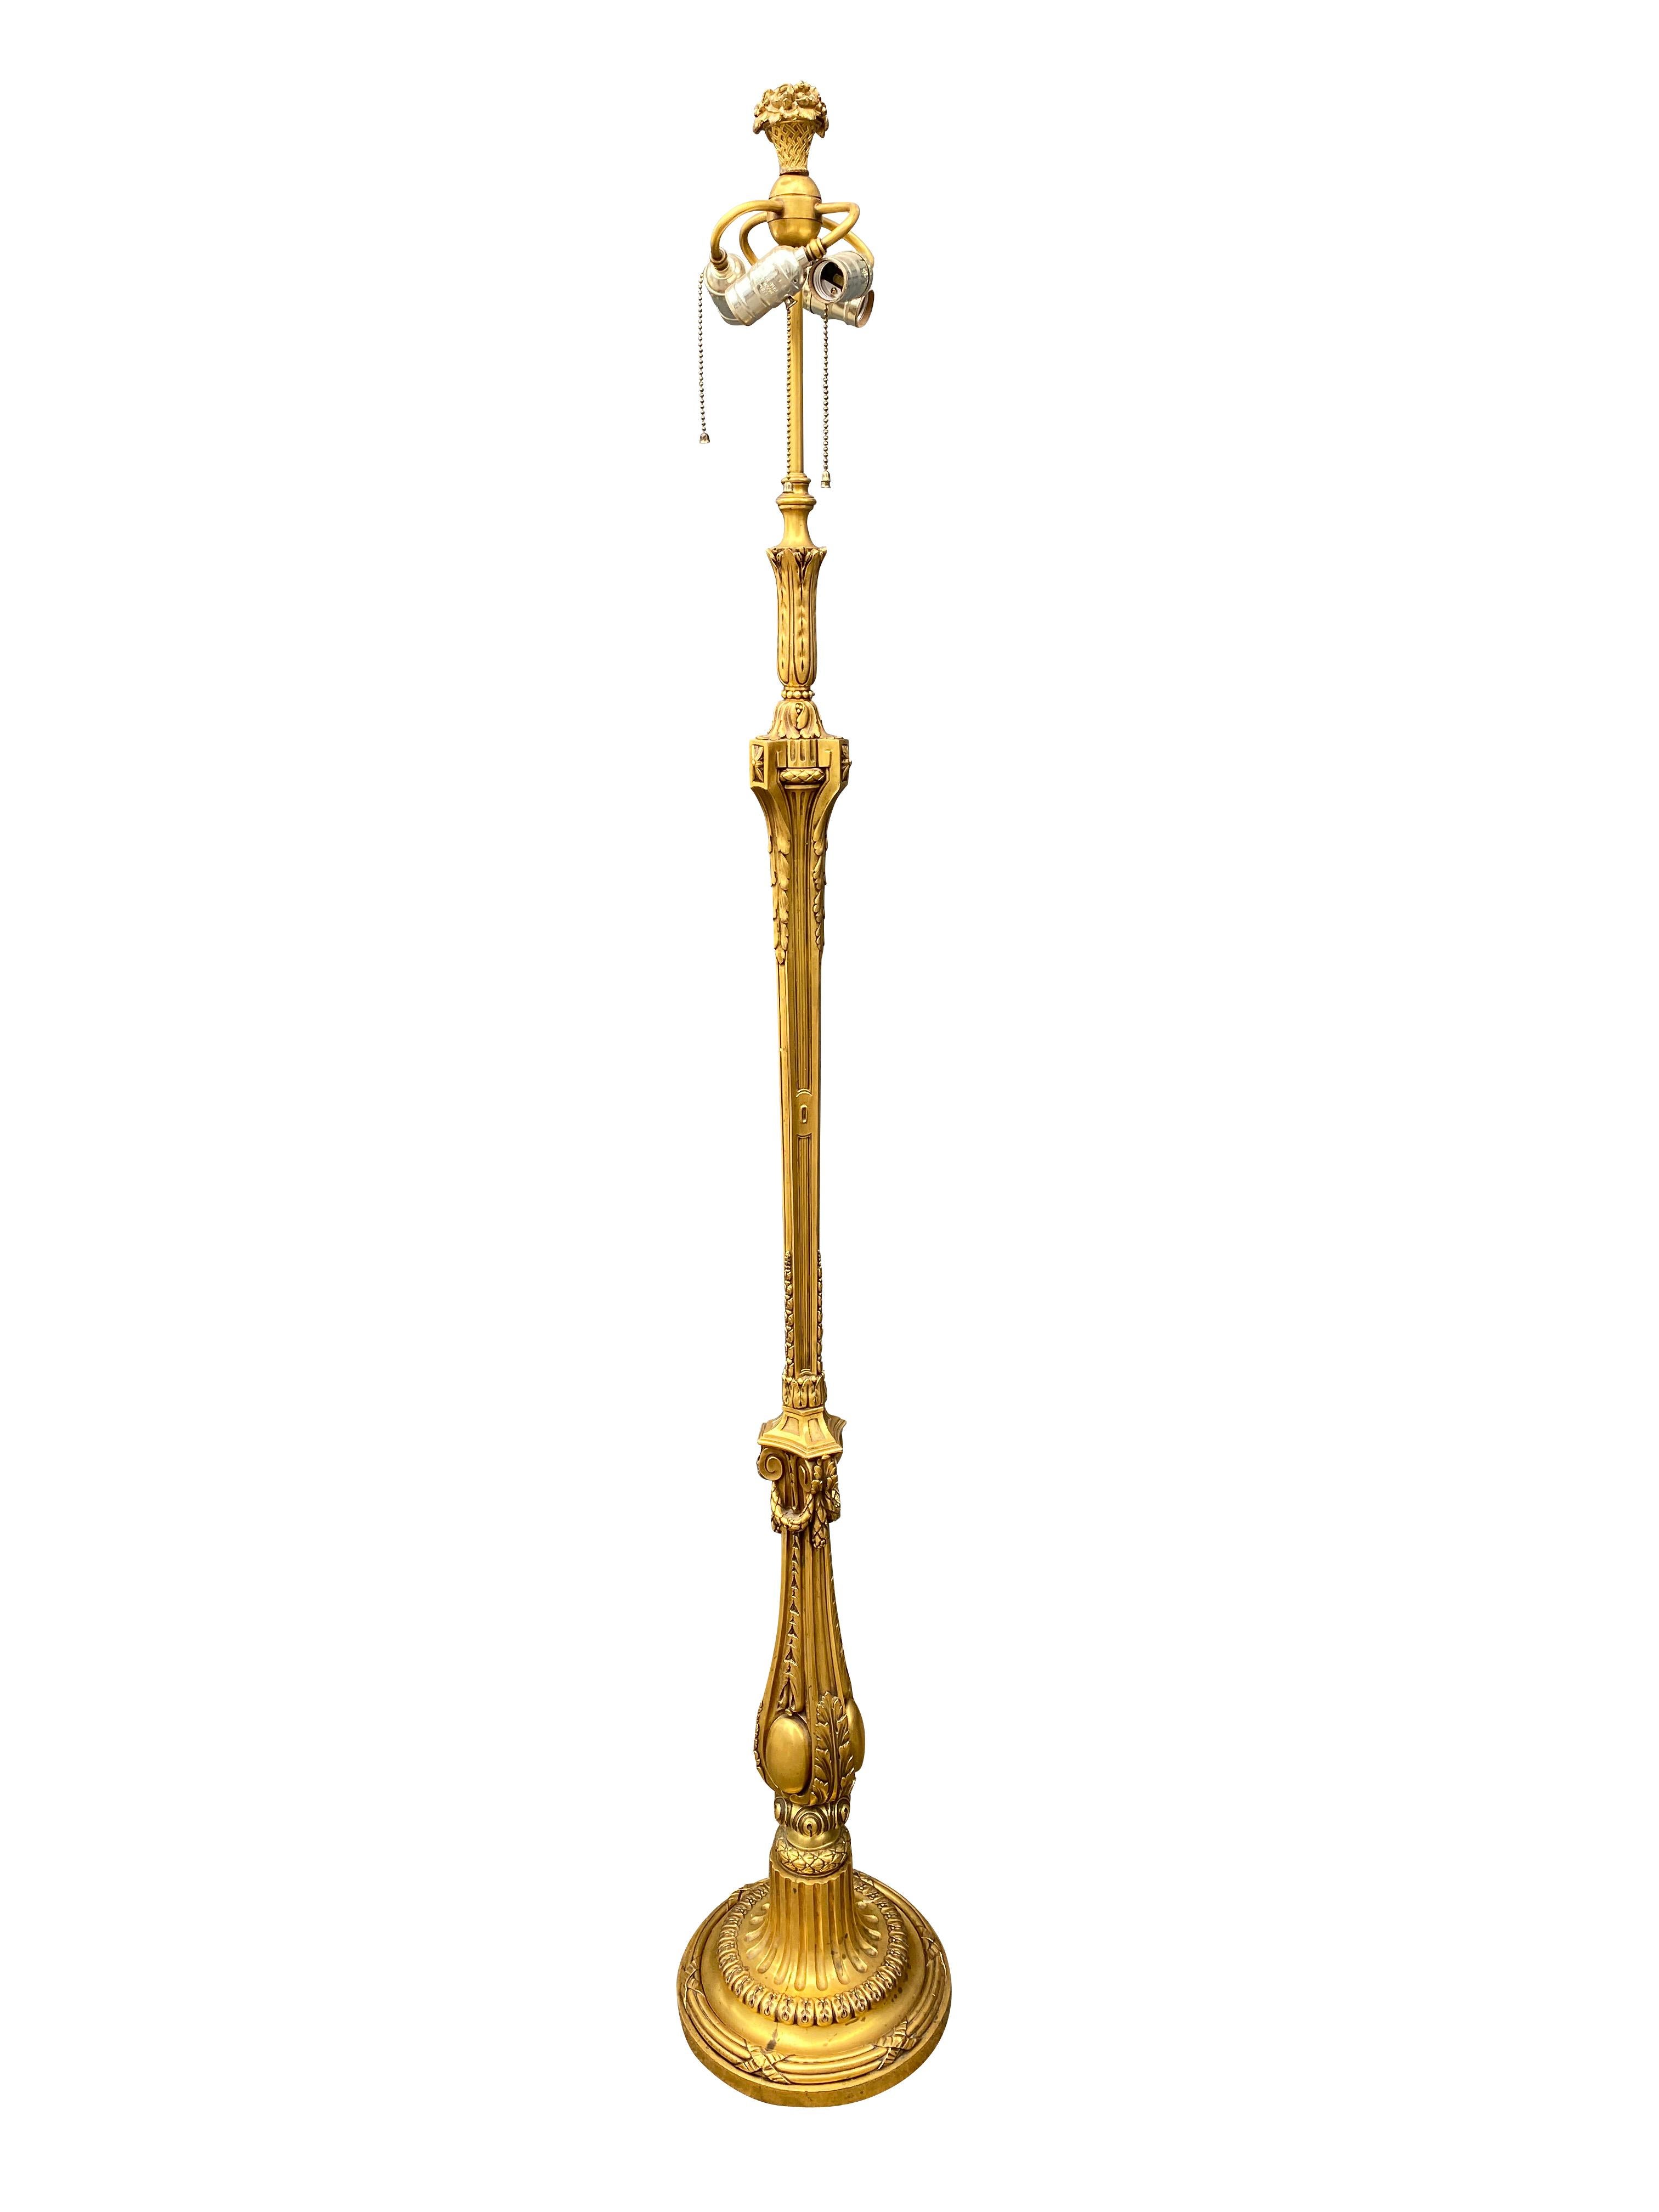 De style Louis XVI, avec un décor finement moulé, signé sur le côté de la base. Ex vente Christies.